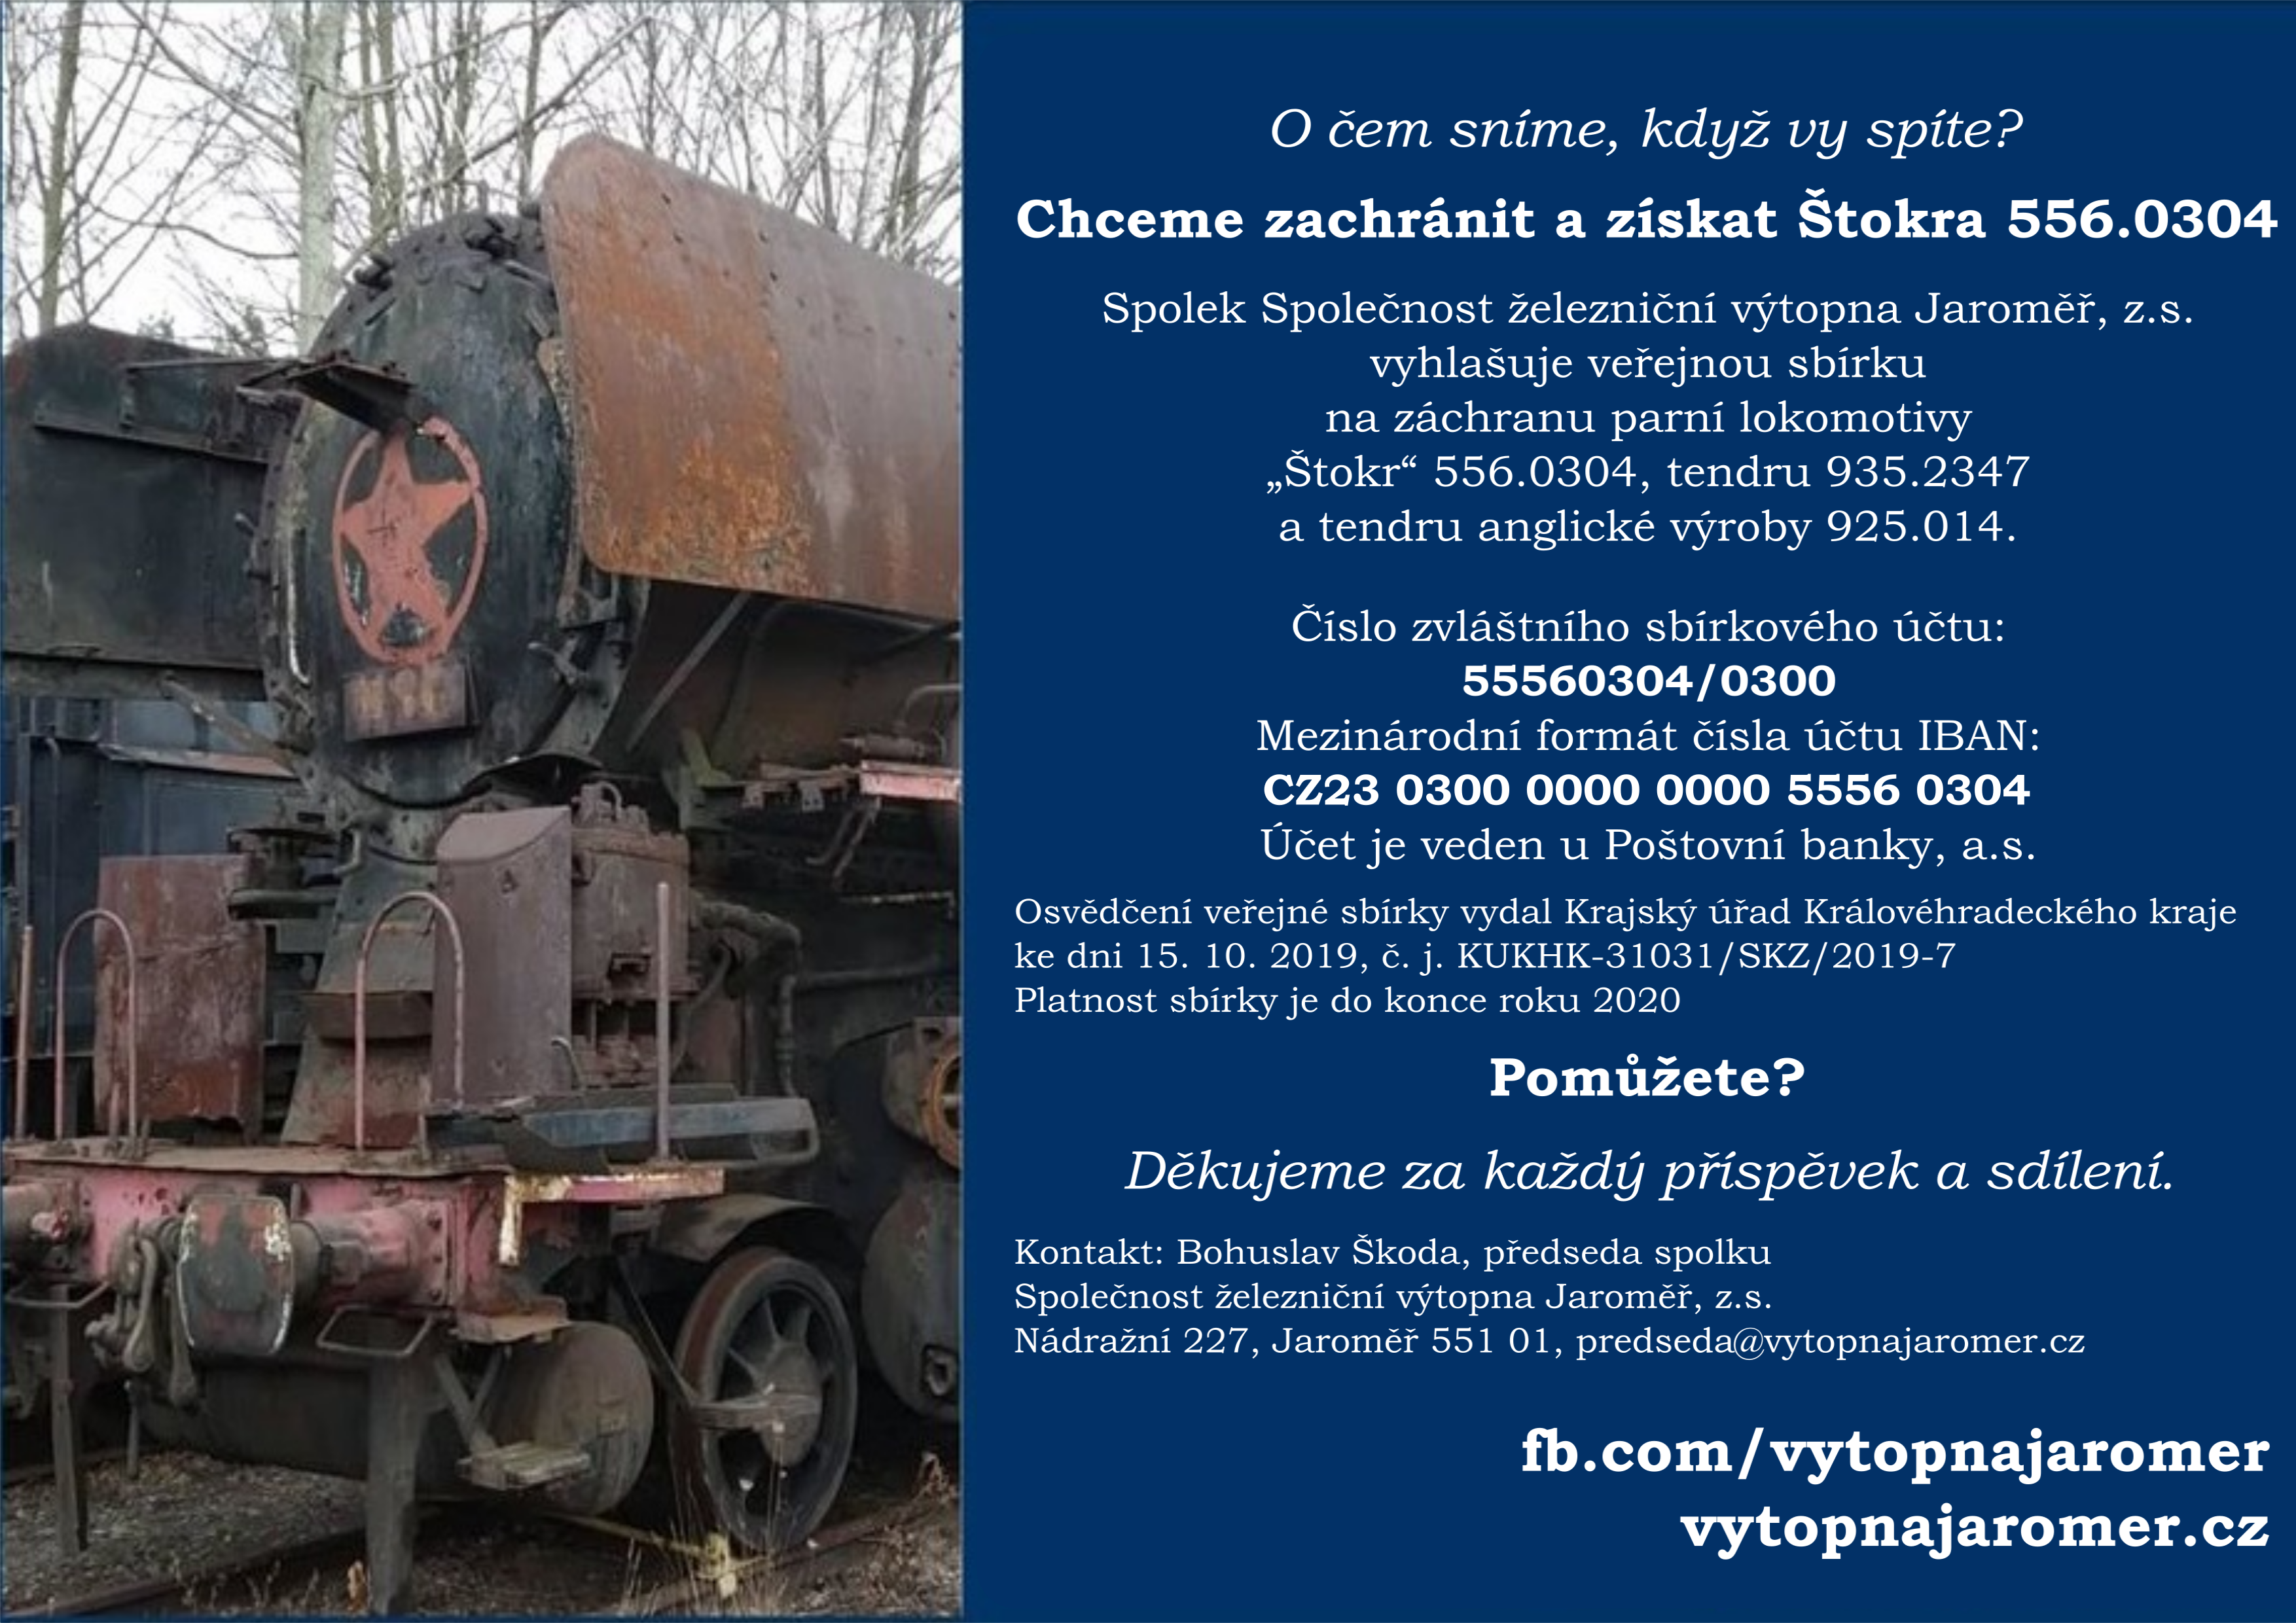 Sbírka na záchranu parní lokomotivy 556.0304